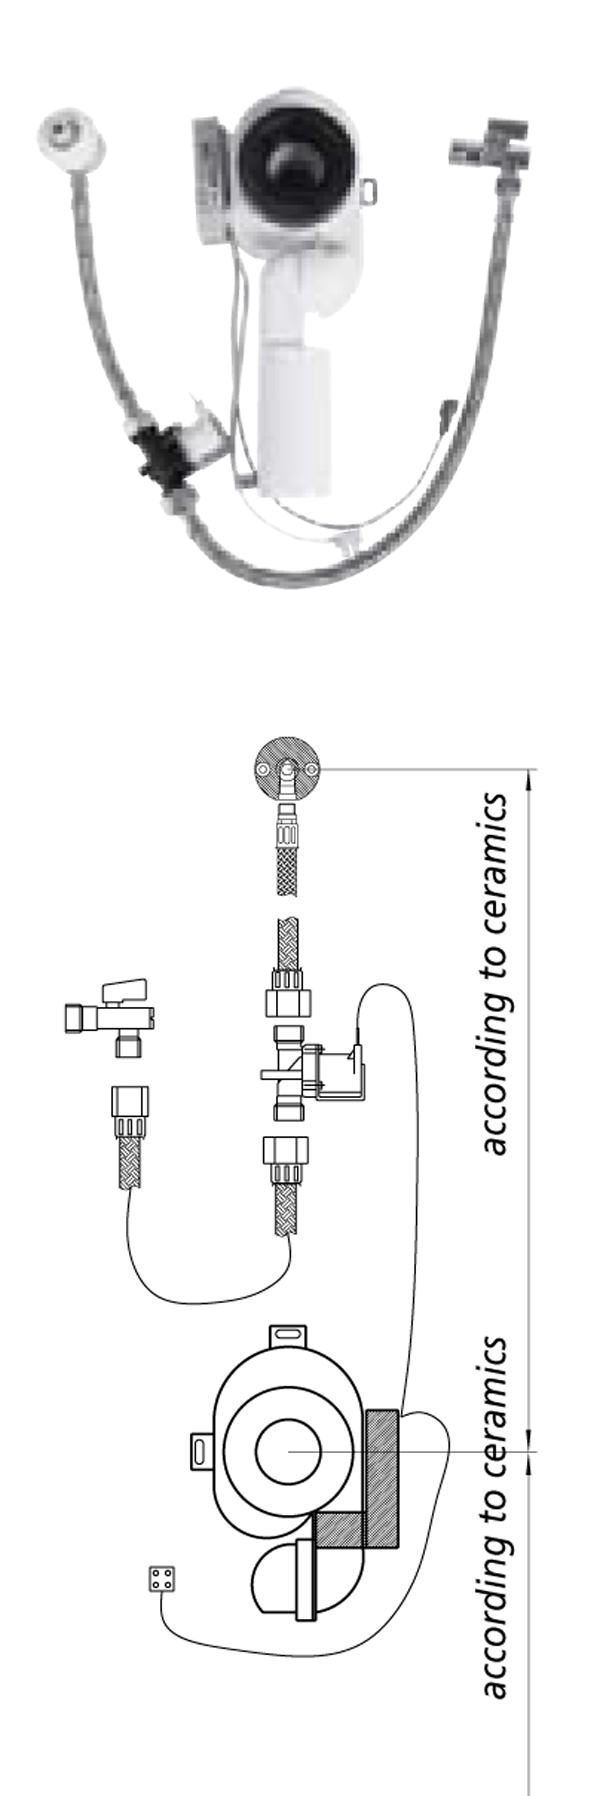 AUP21.B - Automatisch spoelsysteem urinoir